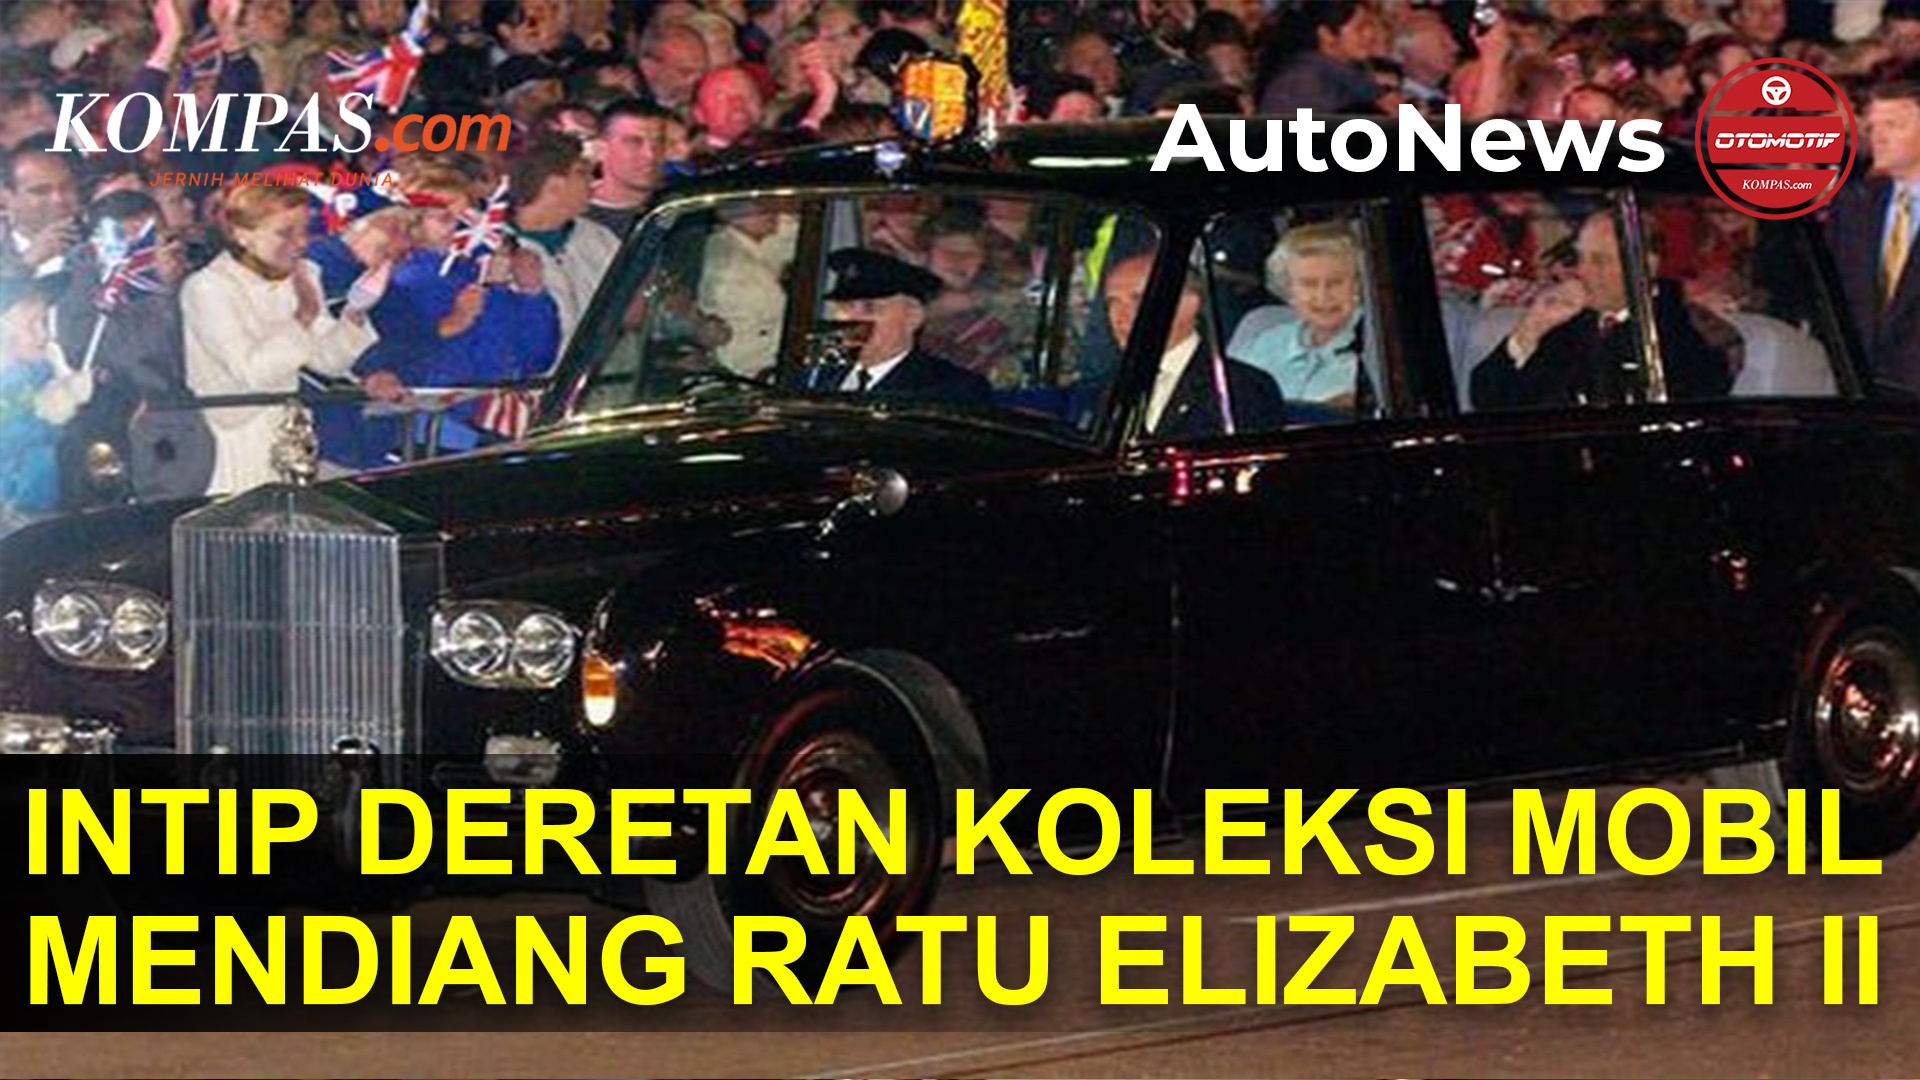 Sangat Nasionalis, Ini Dia Deretan Koleksi Mobil Ratu Elizabeth II